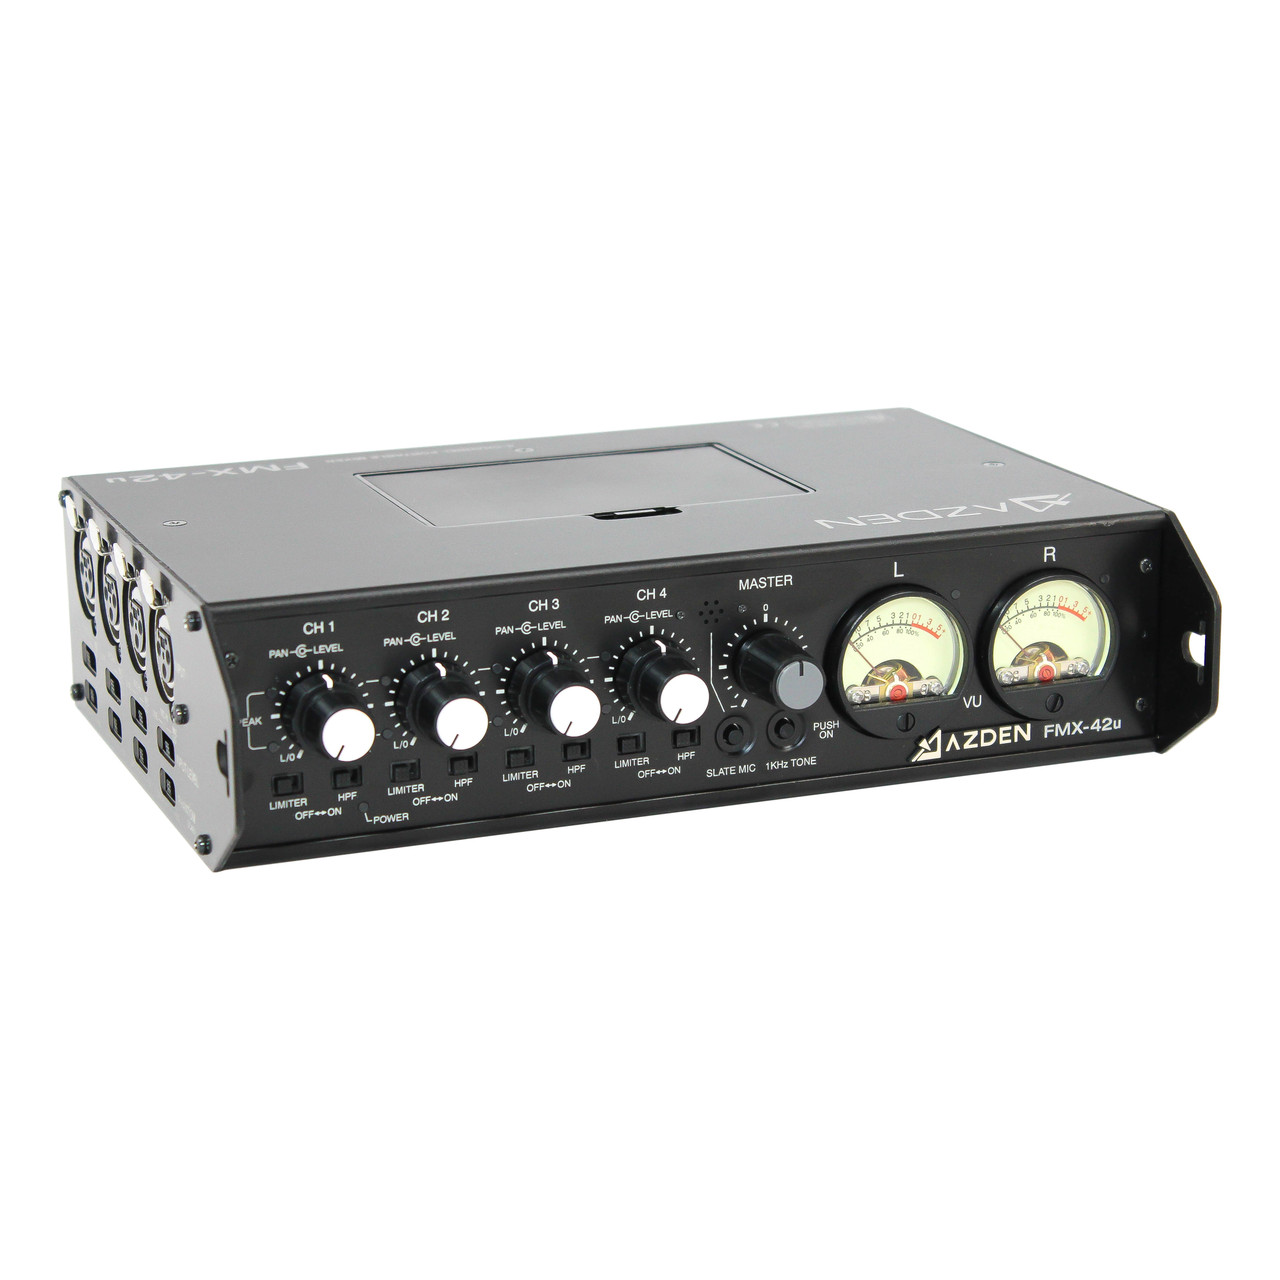 FMX-22 - 2 Channel Portable Mixer - Azden